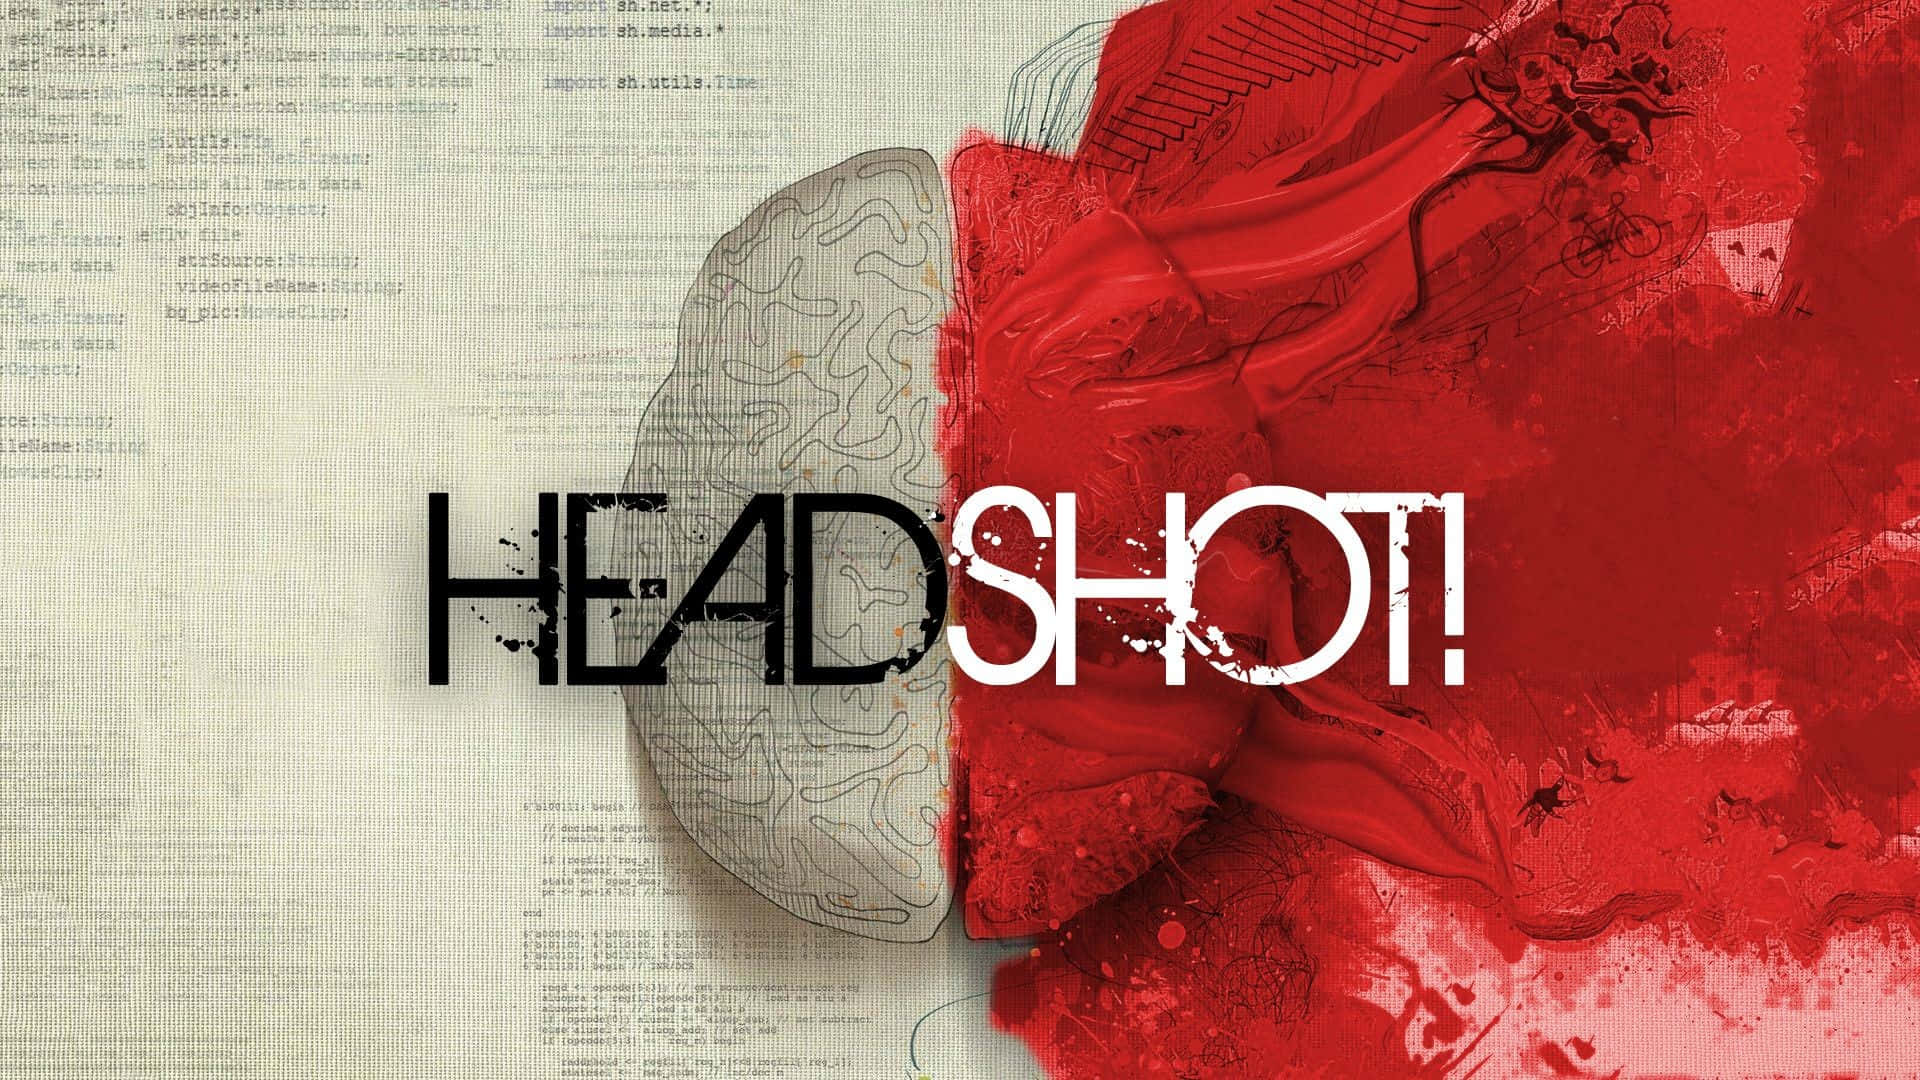 Headshoten Hjärna Med Röd Färg På Den (gällande Dator- Eller Mobilbakgrundsbild) Wallpaper